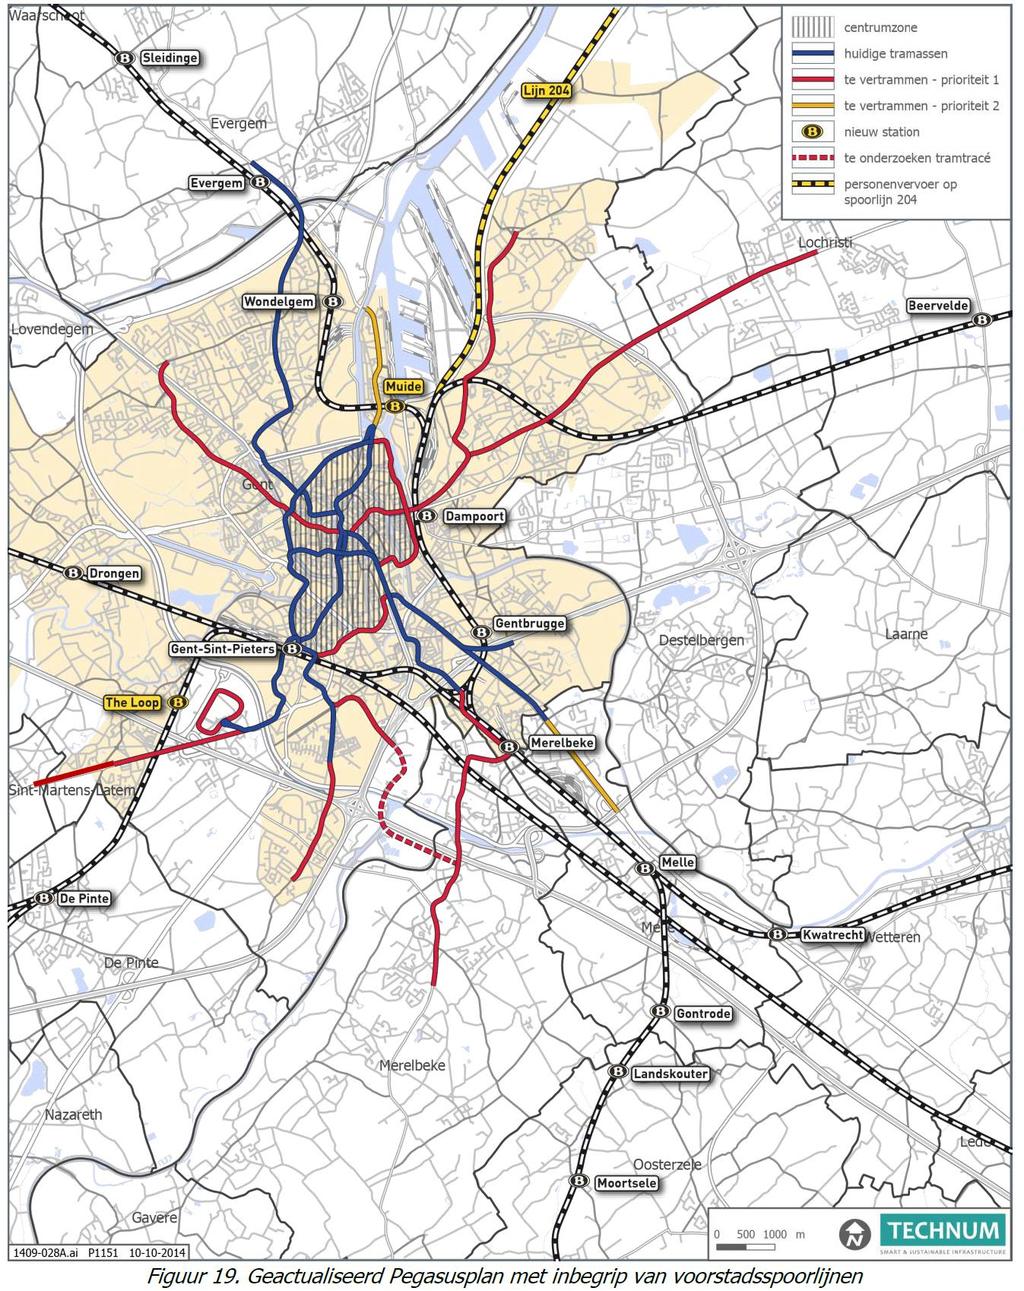 Er kunnen twee aandachtspunten uit het nieuwe mobiliteitsplan Gent gedistilleerd worden met repercussies voor de gemeente Melle, nl.